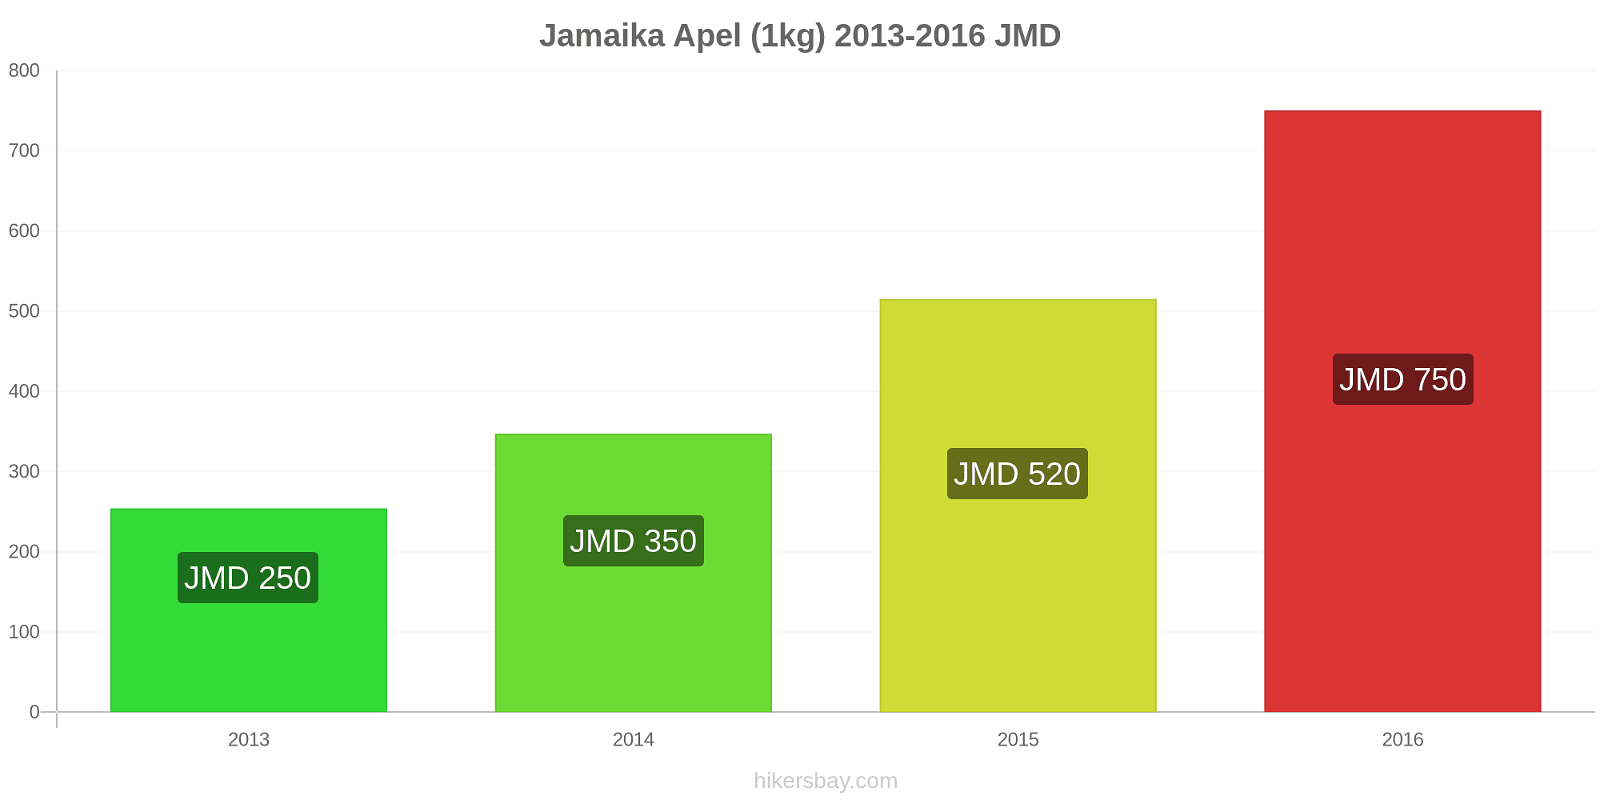 Jamaika perubahan harga Apel (1kg) hikersbay.com